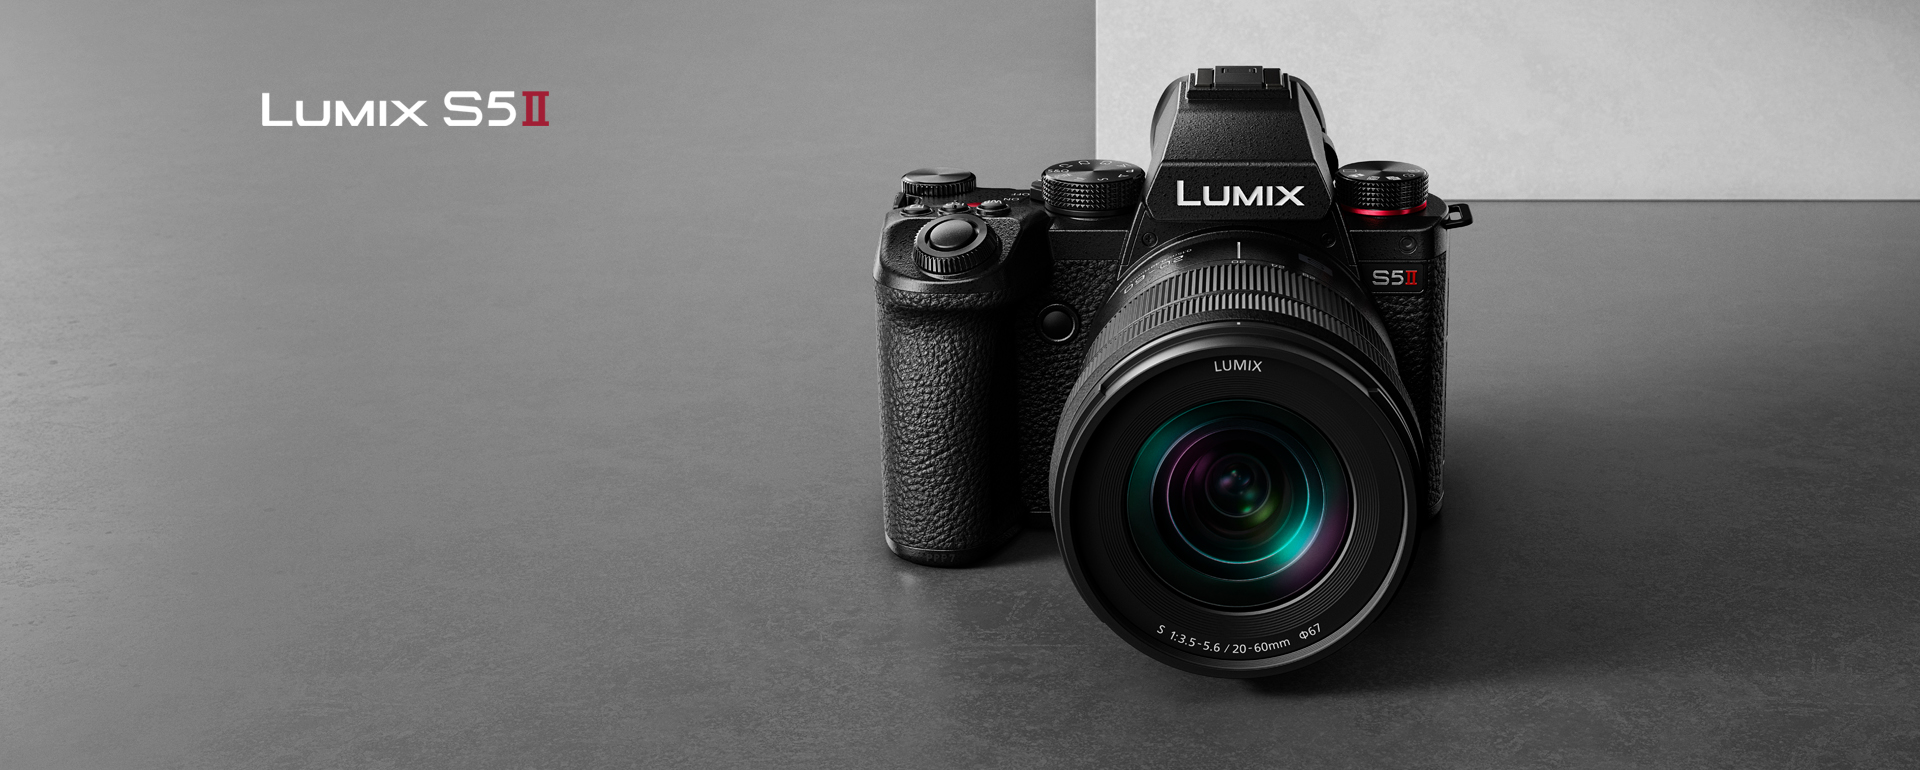 Zaměřte se na to, co je důležité, s novým fotoaparátem LUMIX S5MII